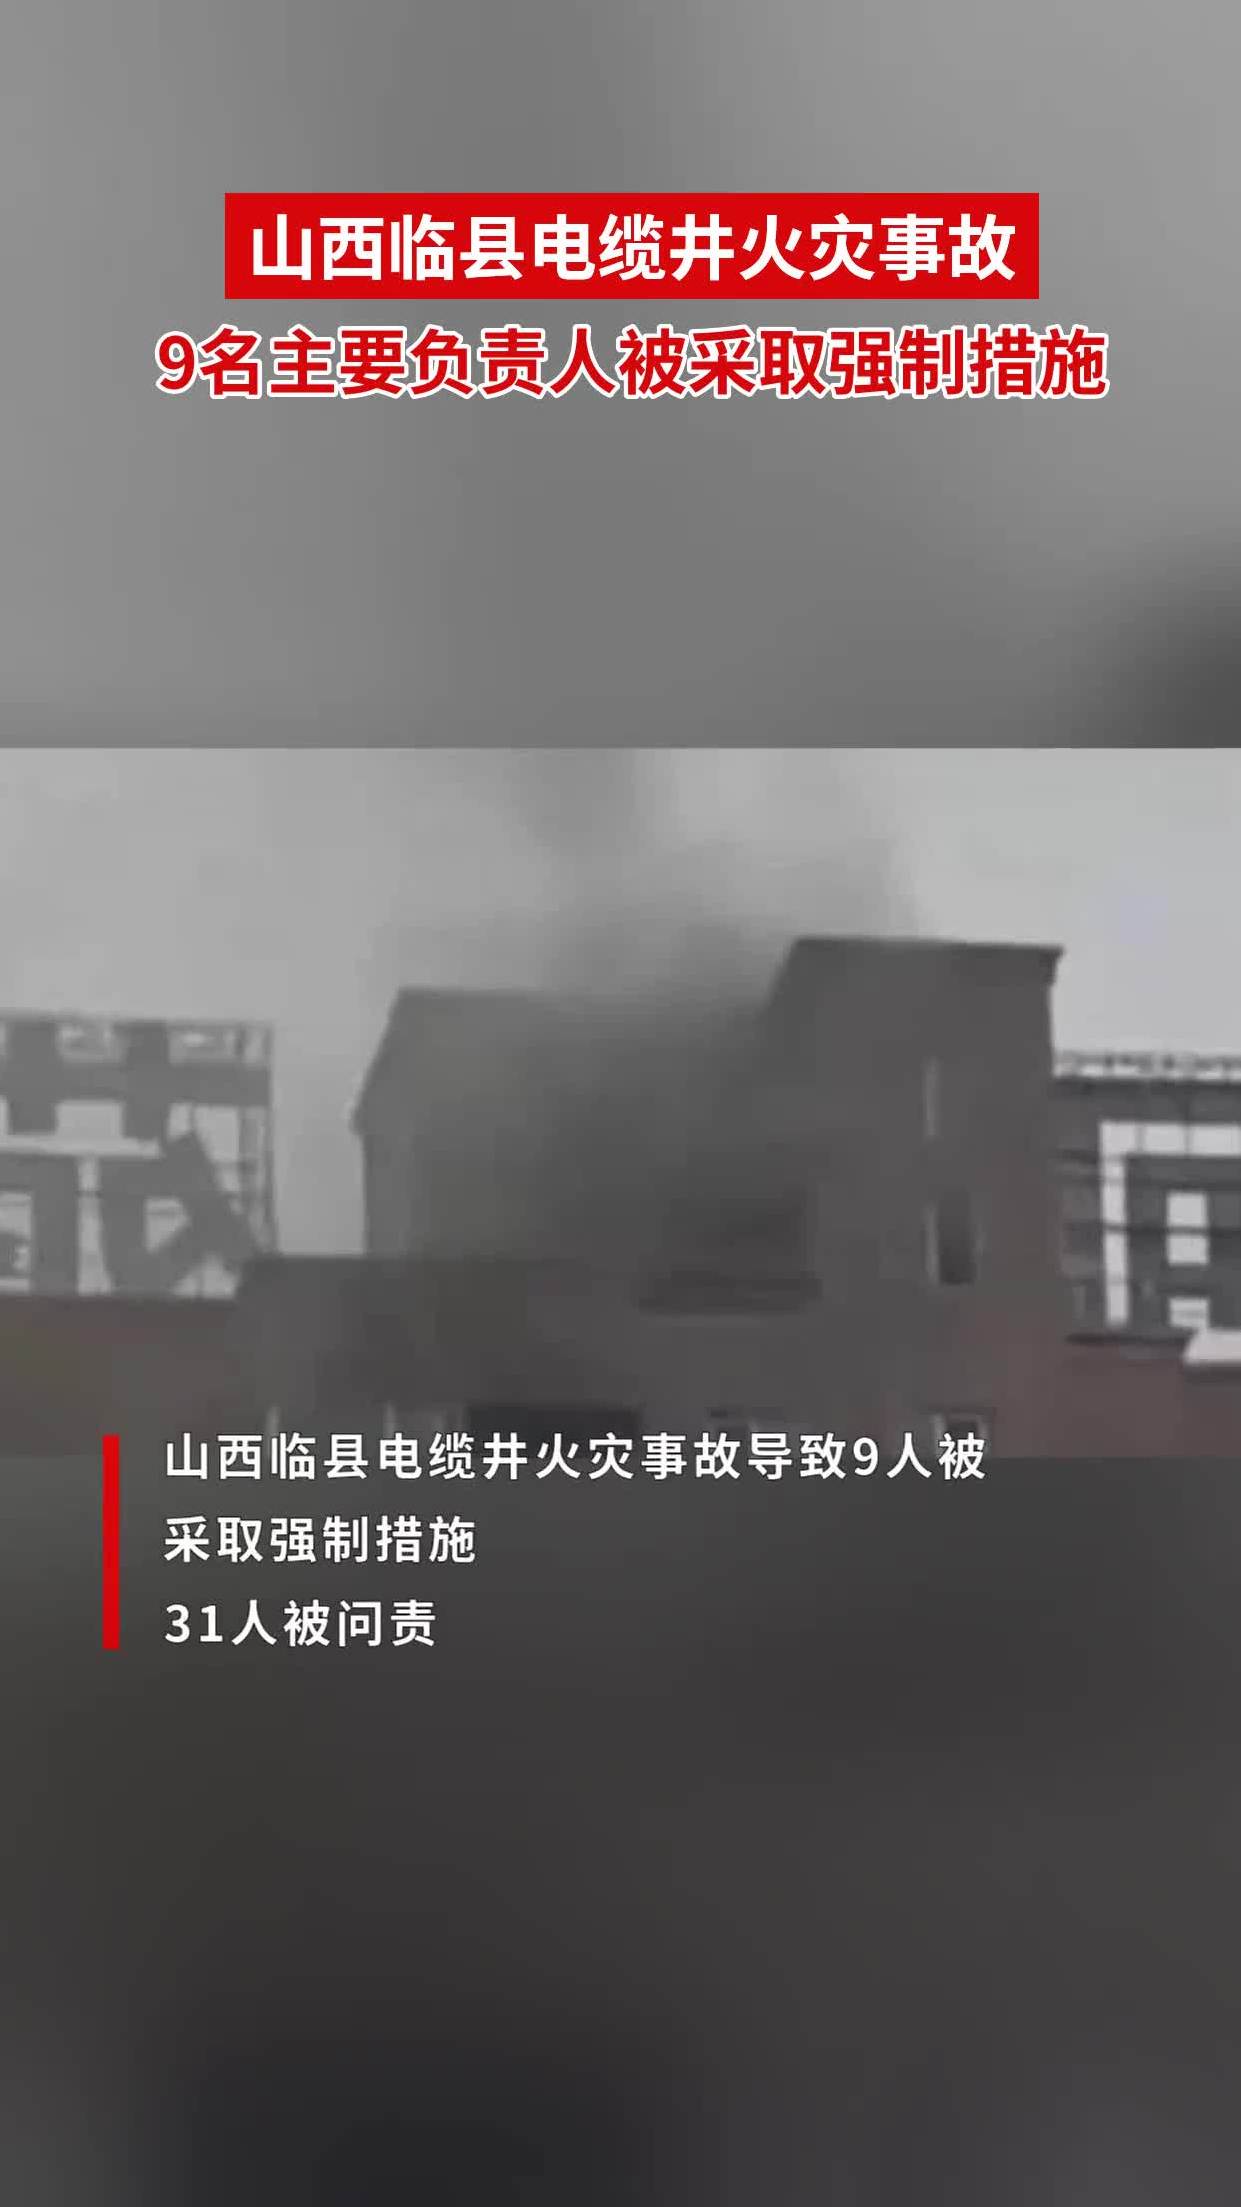 山西吕梁永聚煤业火灾致26人遇难 起火原因正在调查中_救援_王帆_伤者